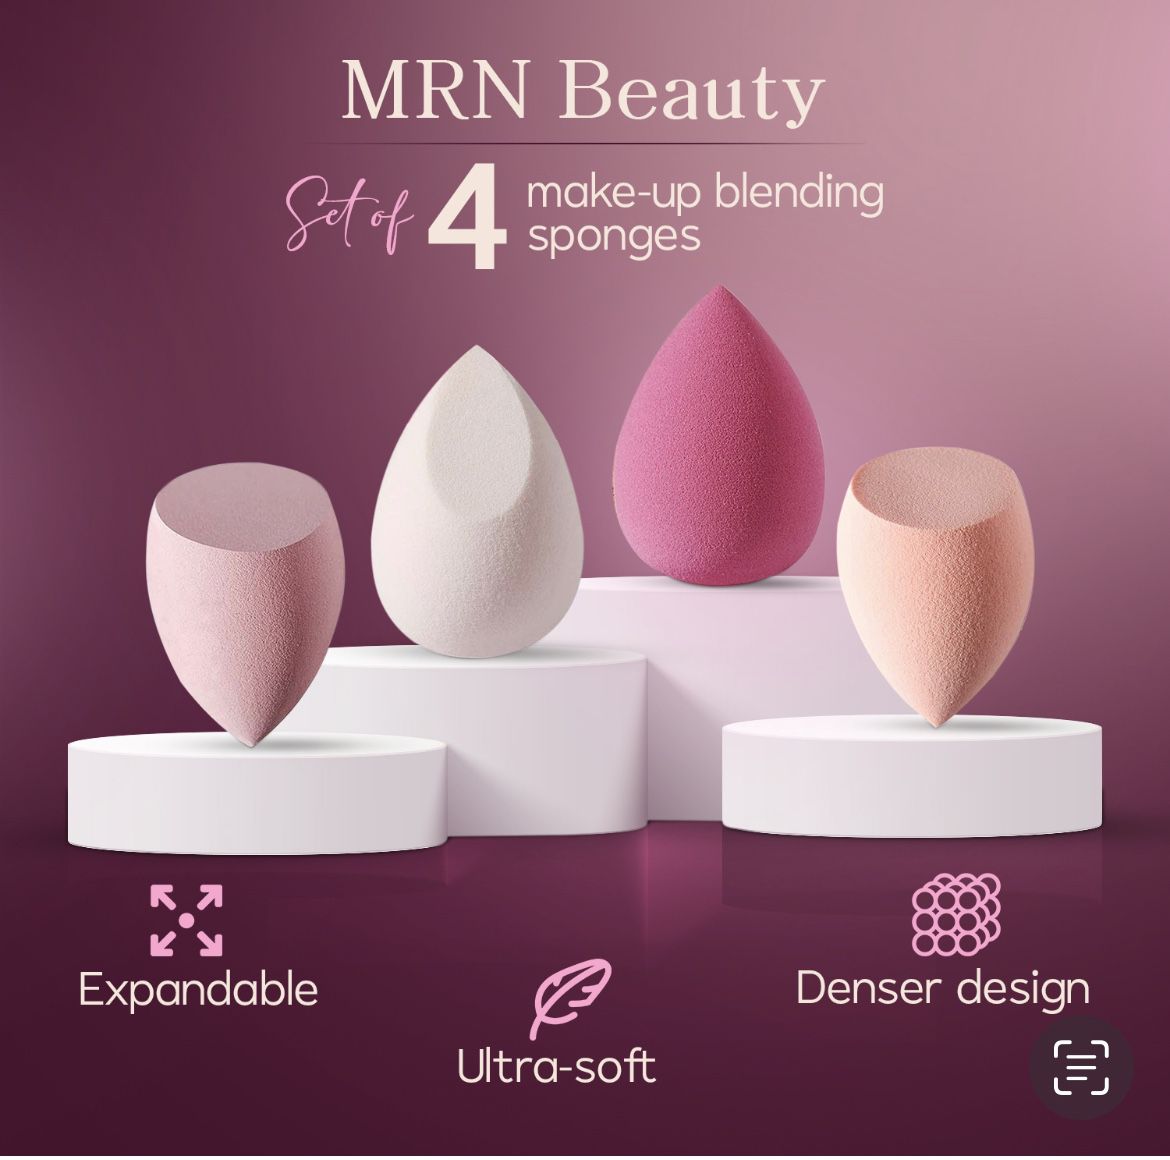 Christmas gift for Her and makeup lovers-Beauty blender/sponge-beauty foundation, powder sponge MRNBEAUTY